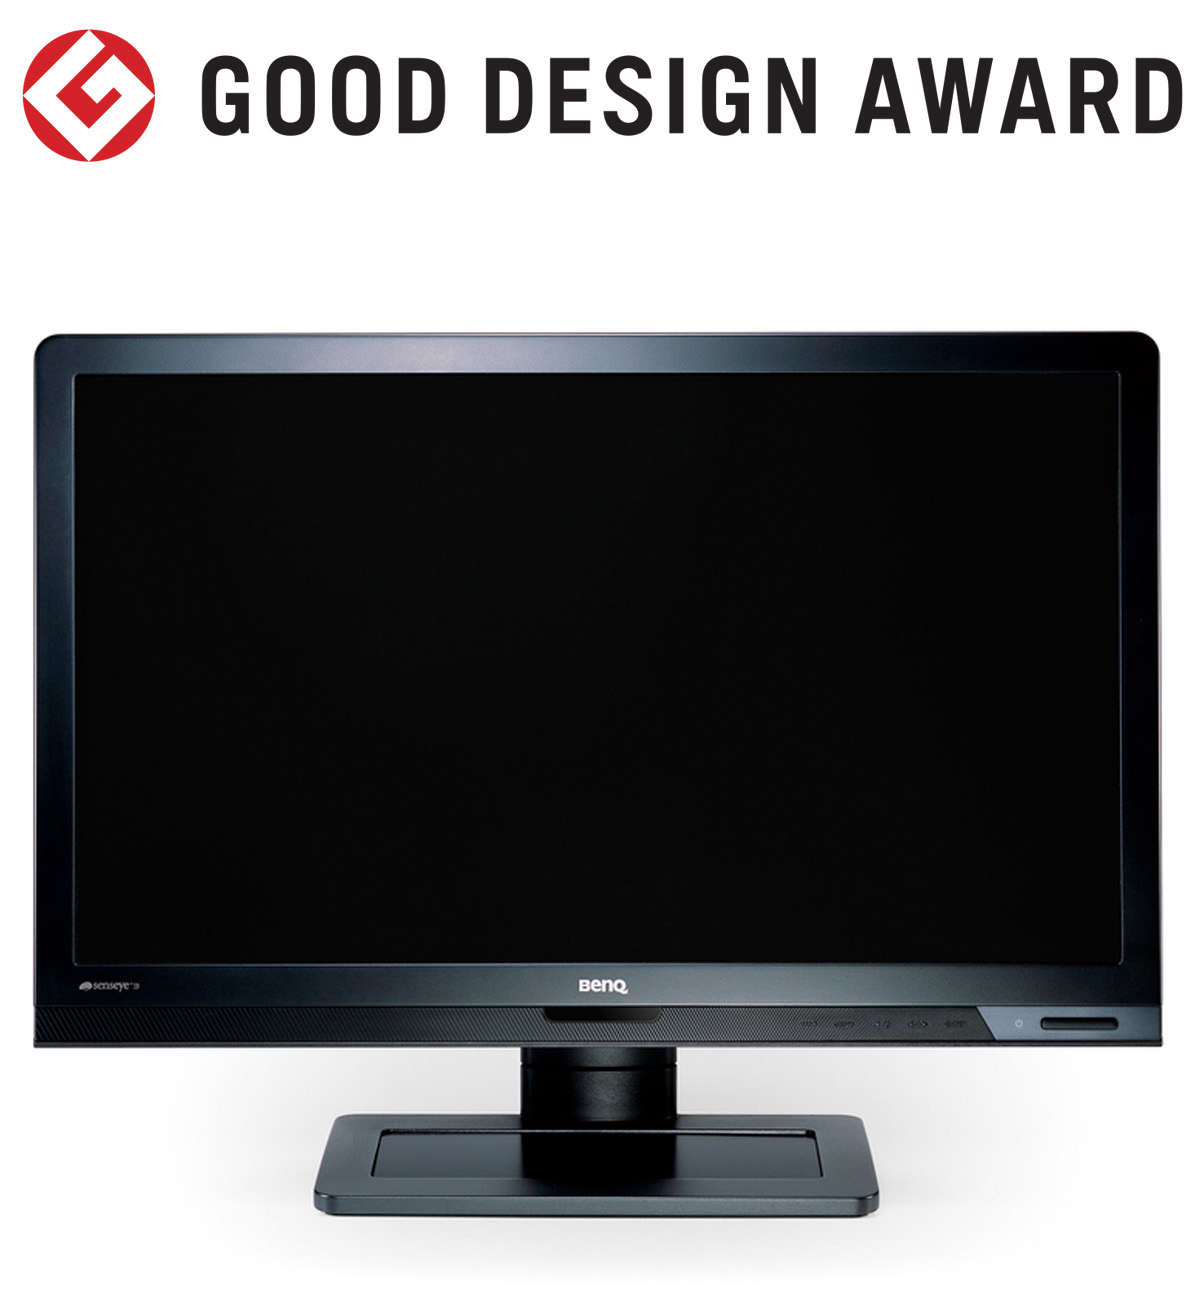 【日本】明基BenQ商用显示器B2210HD获颁2010年度G-Mark设计大奖（GOOD DESIGN AWARD 2010）